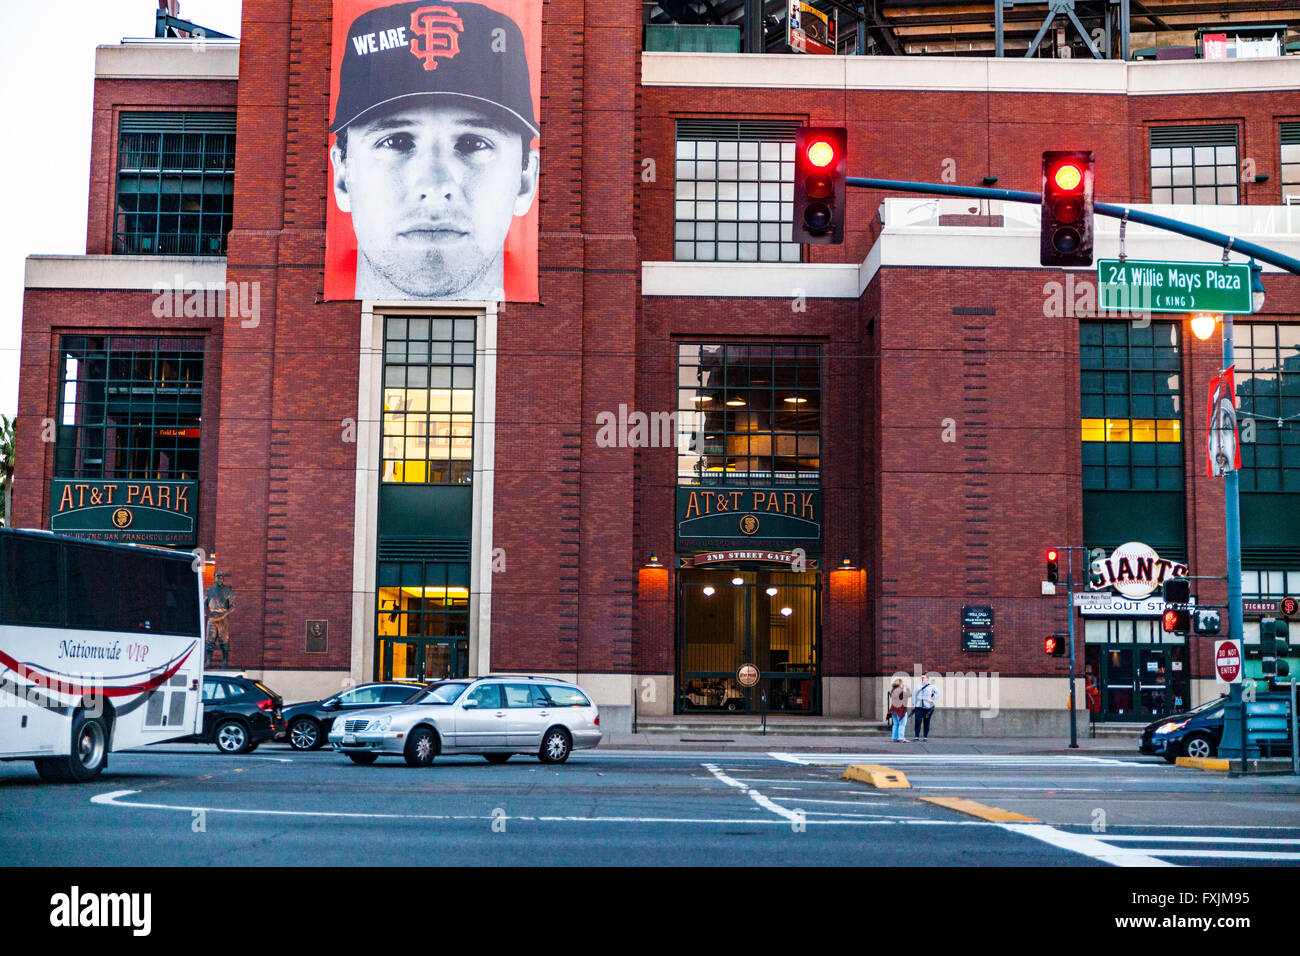 AT&T Park à San Francisco Californie accueil de l'équipe de baseball des Giants Banque D'Images